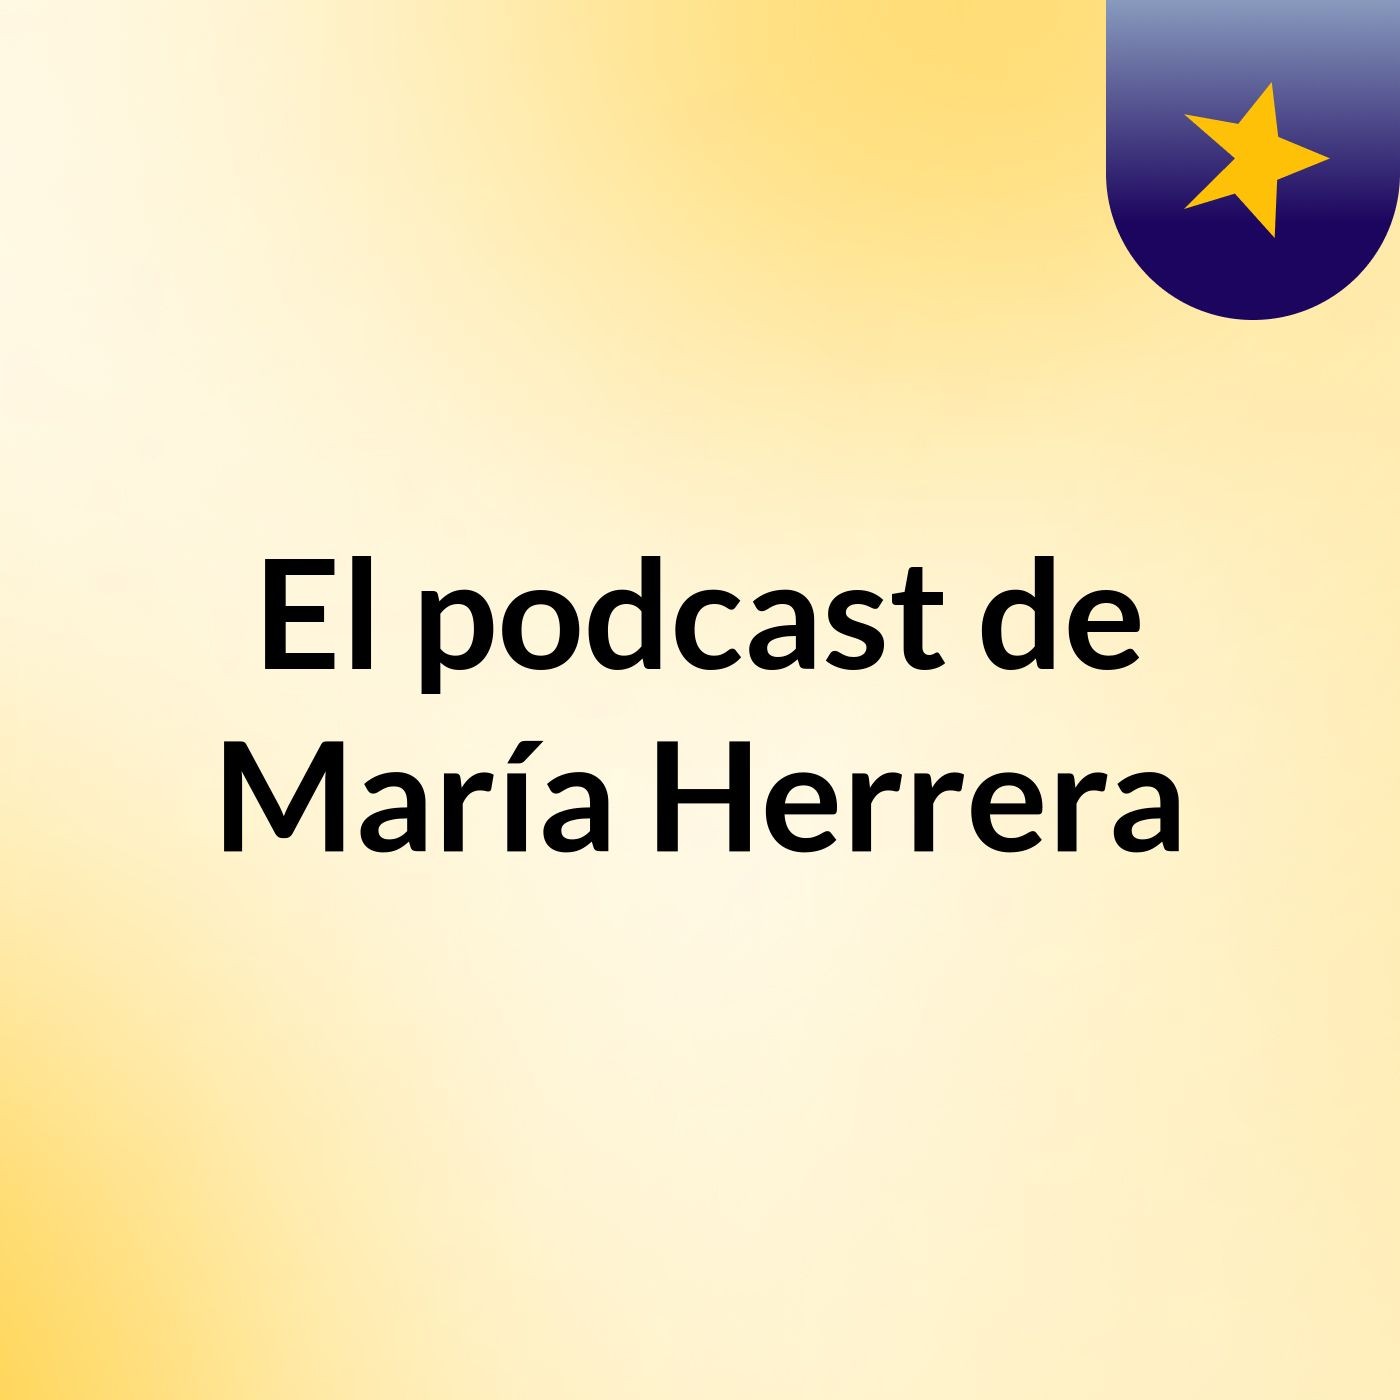 El podcast de María Herrera